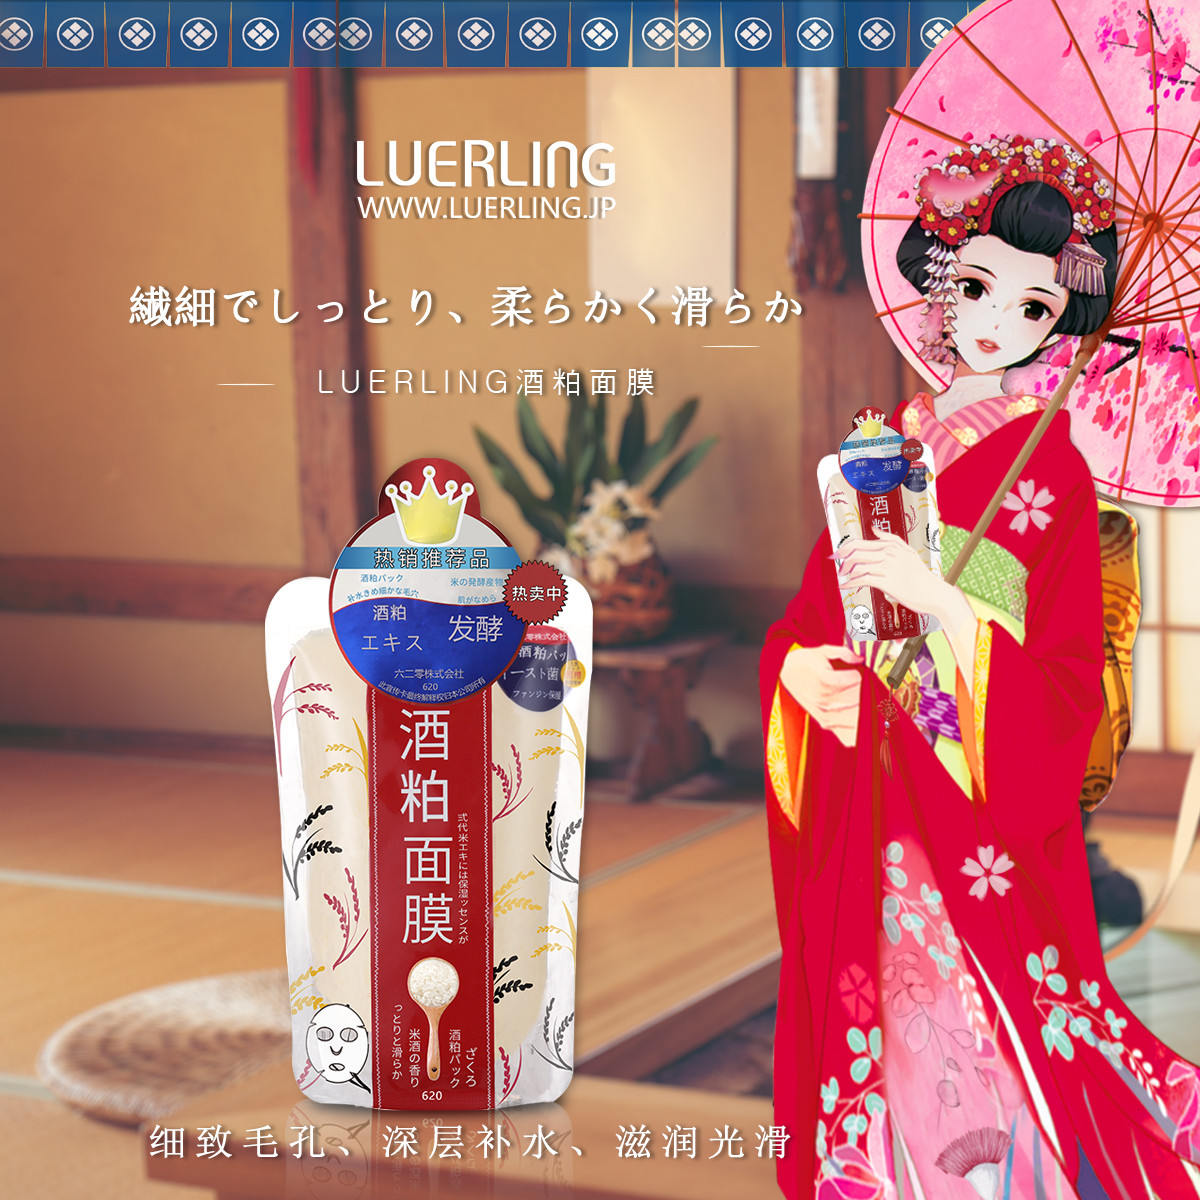 日本luerling酒粕面膜170g*1袋